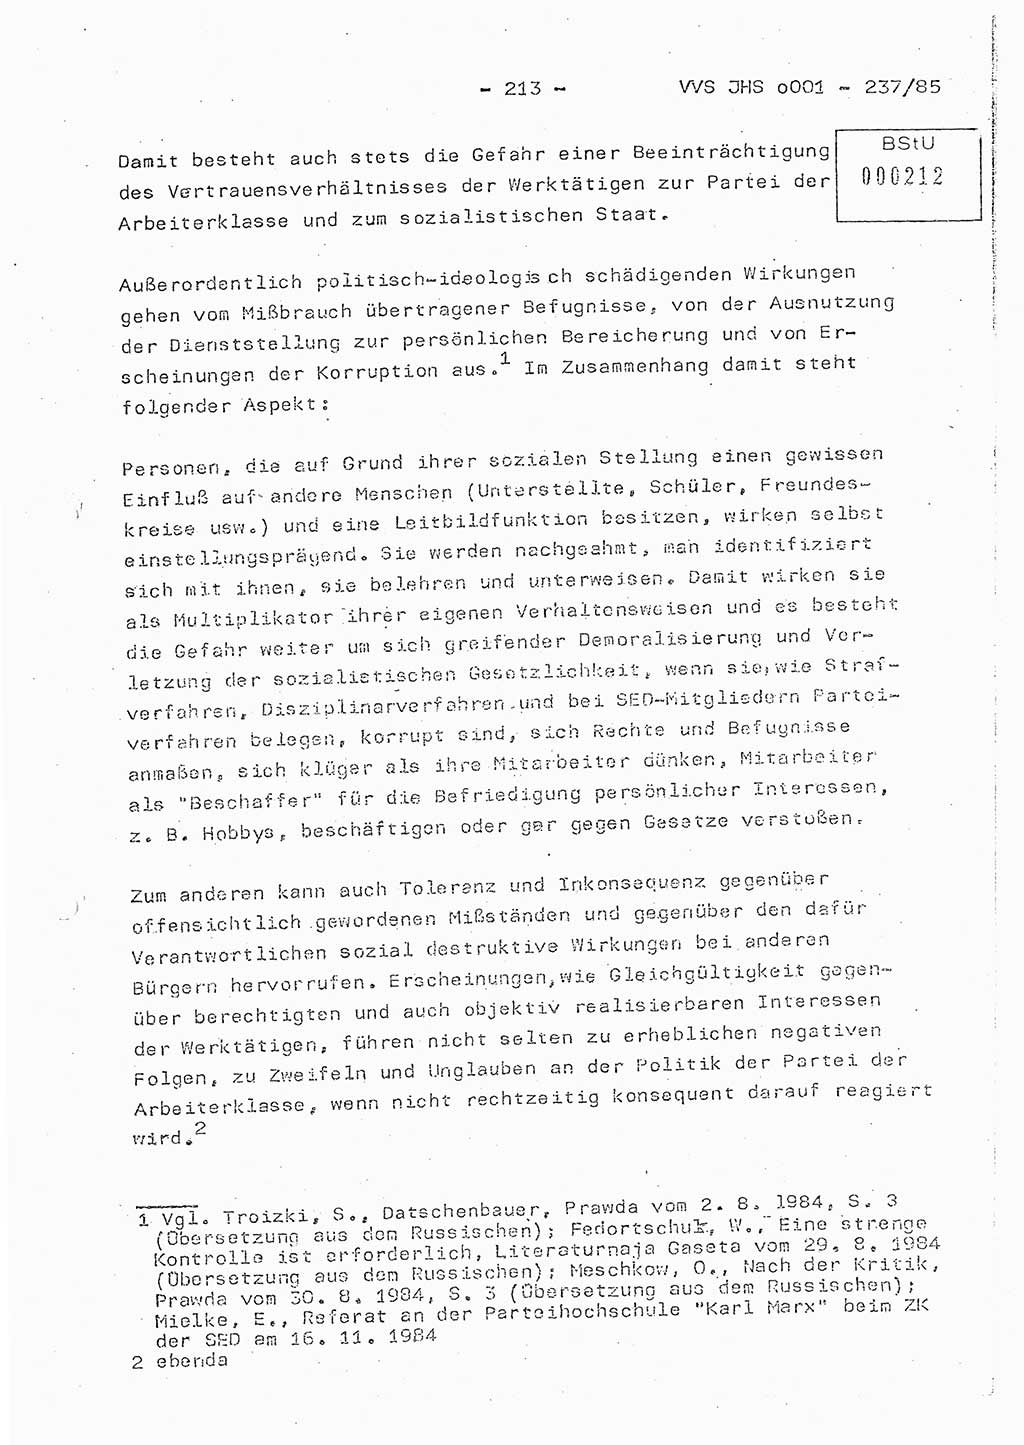 Dissertation Oberstleutnant Peter Jakulski (JHS), Oberstleutnat Christian Rudolph (HA Ⅸ), Major Horst Böttger (ZMD), Major Wolfgang Grüneberg (JHS), Major Albert Meutsch (JHS), Ministerium für Staatssicherheit (MfS) [Deutsche Demokratische Republik (DDR)], Juristische Hochschule (JHS), Vertrauliche Verschlußsache (VVS) o001-237/85, Potsdam 1985, Seite 213 (Diss. MfS DDR JHS VVS o001-237/85 1985, S. 213)